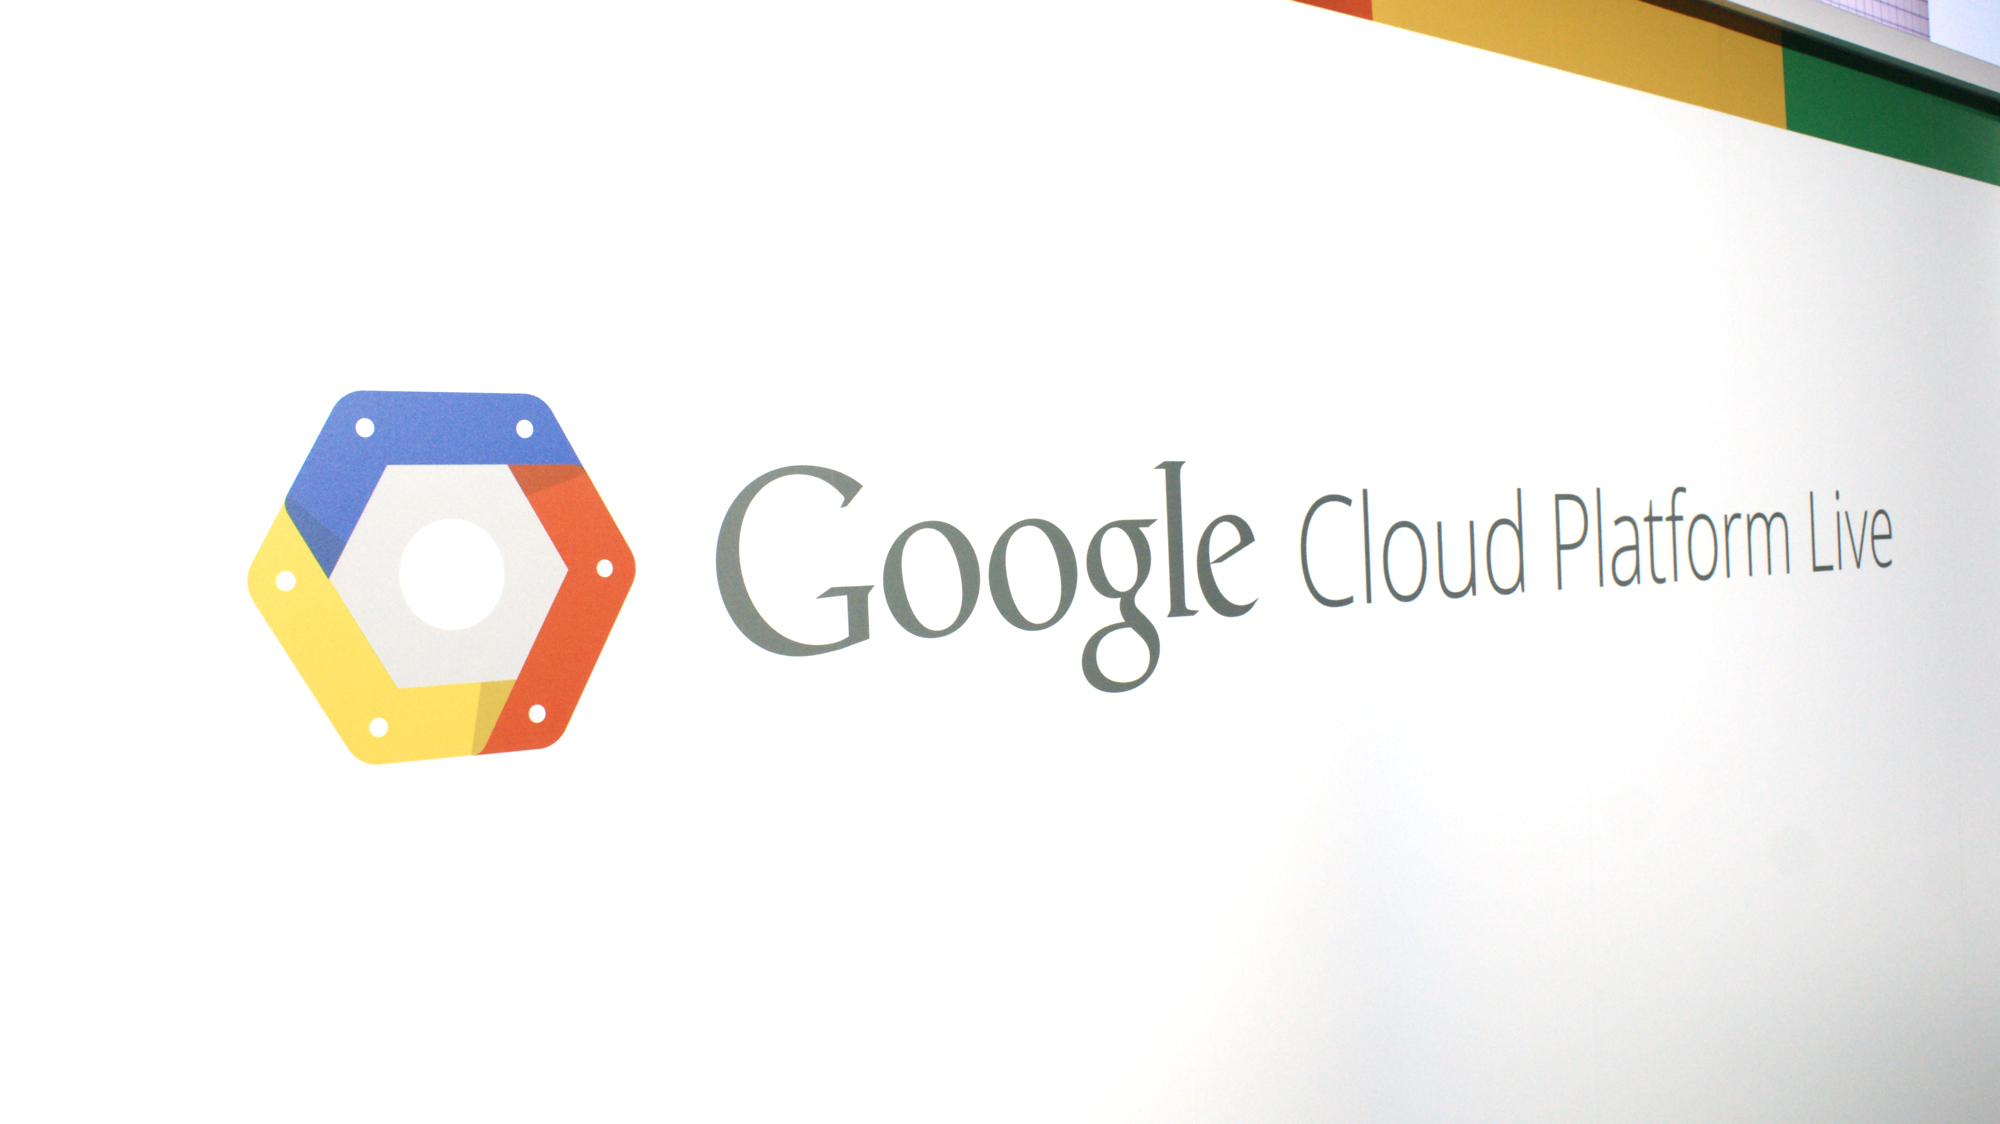 google cloud messaging api example